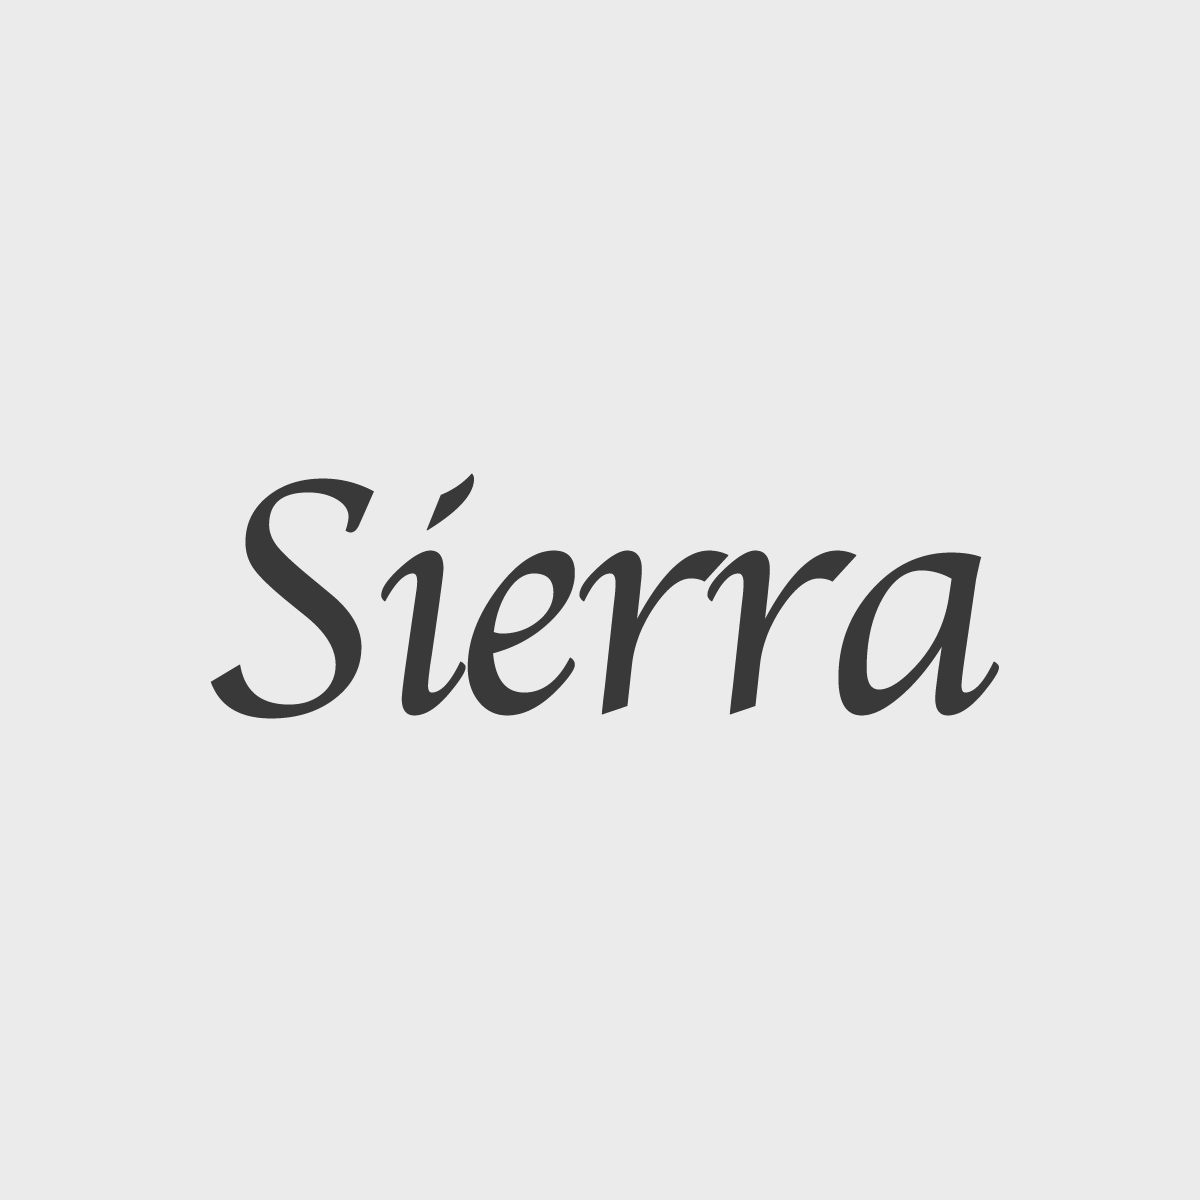 Sierra [시에라]